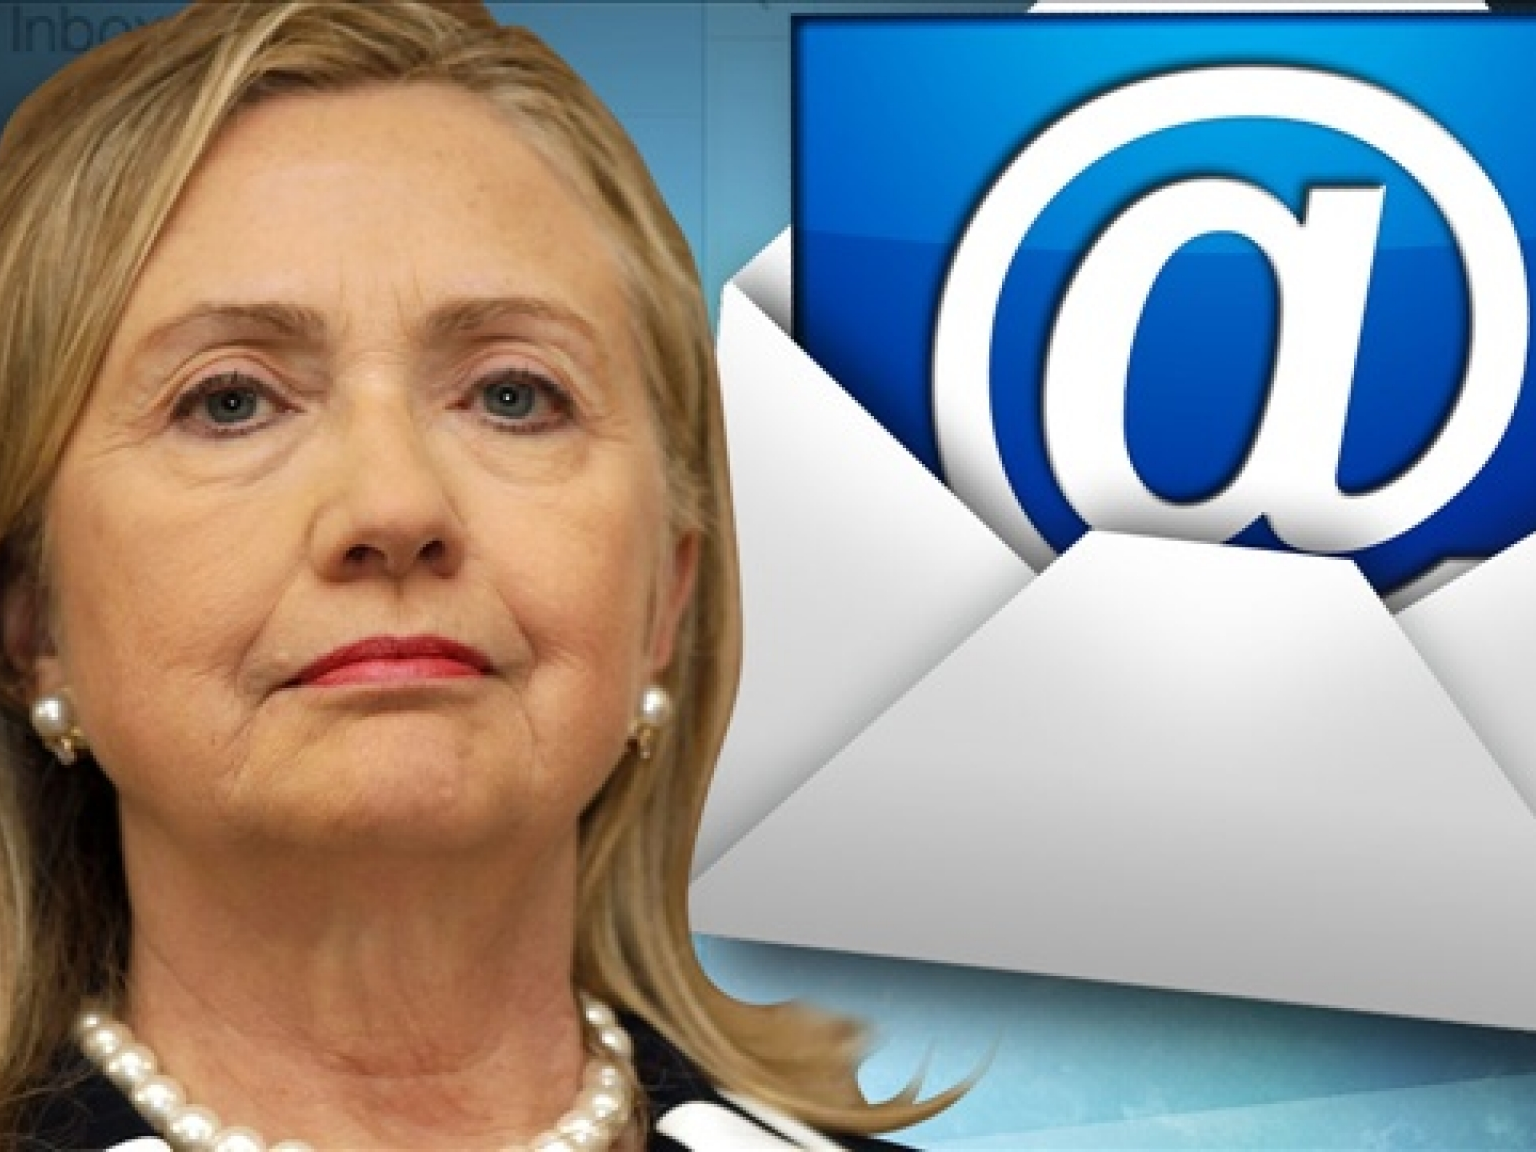 Bê bối sử dụng email cá nhân đeo bám bà Hillary Clinton